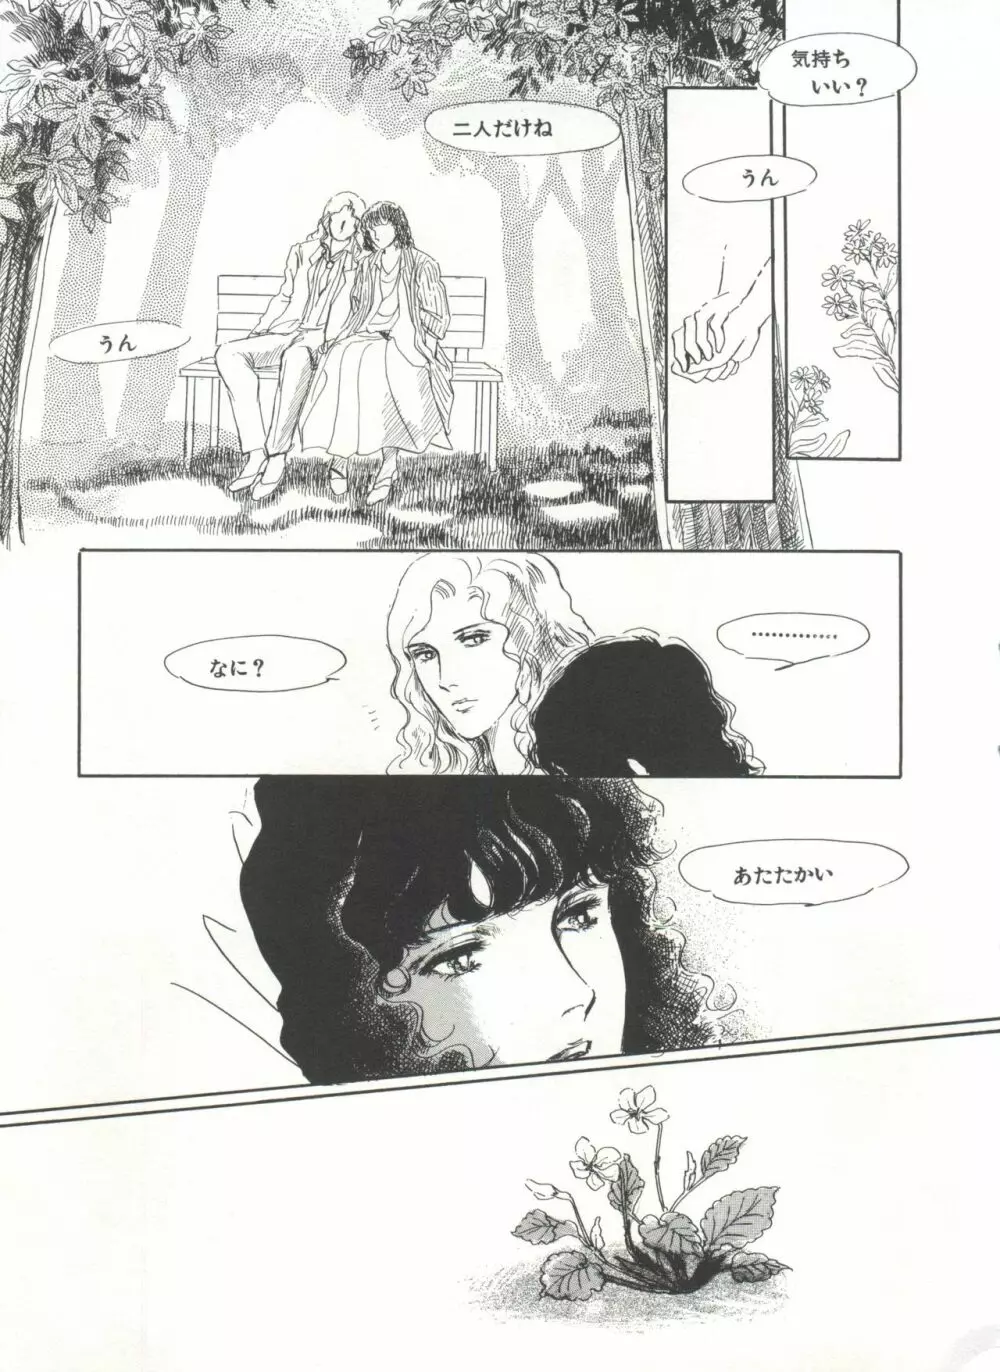 [Anthology] 美少女症候群(2) Lolita syndrome (よろず) 168ページ